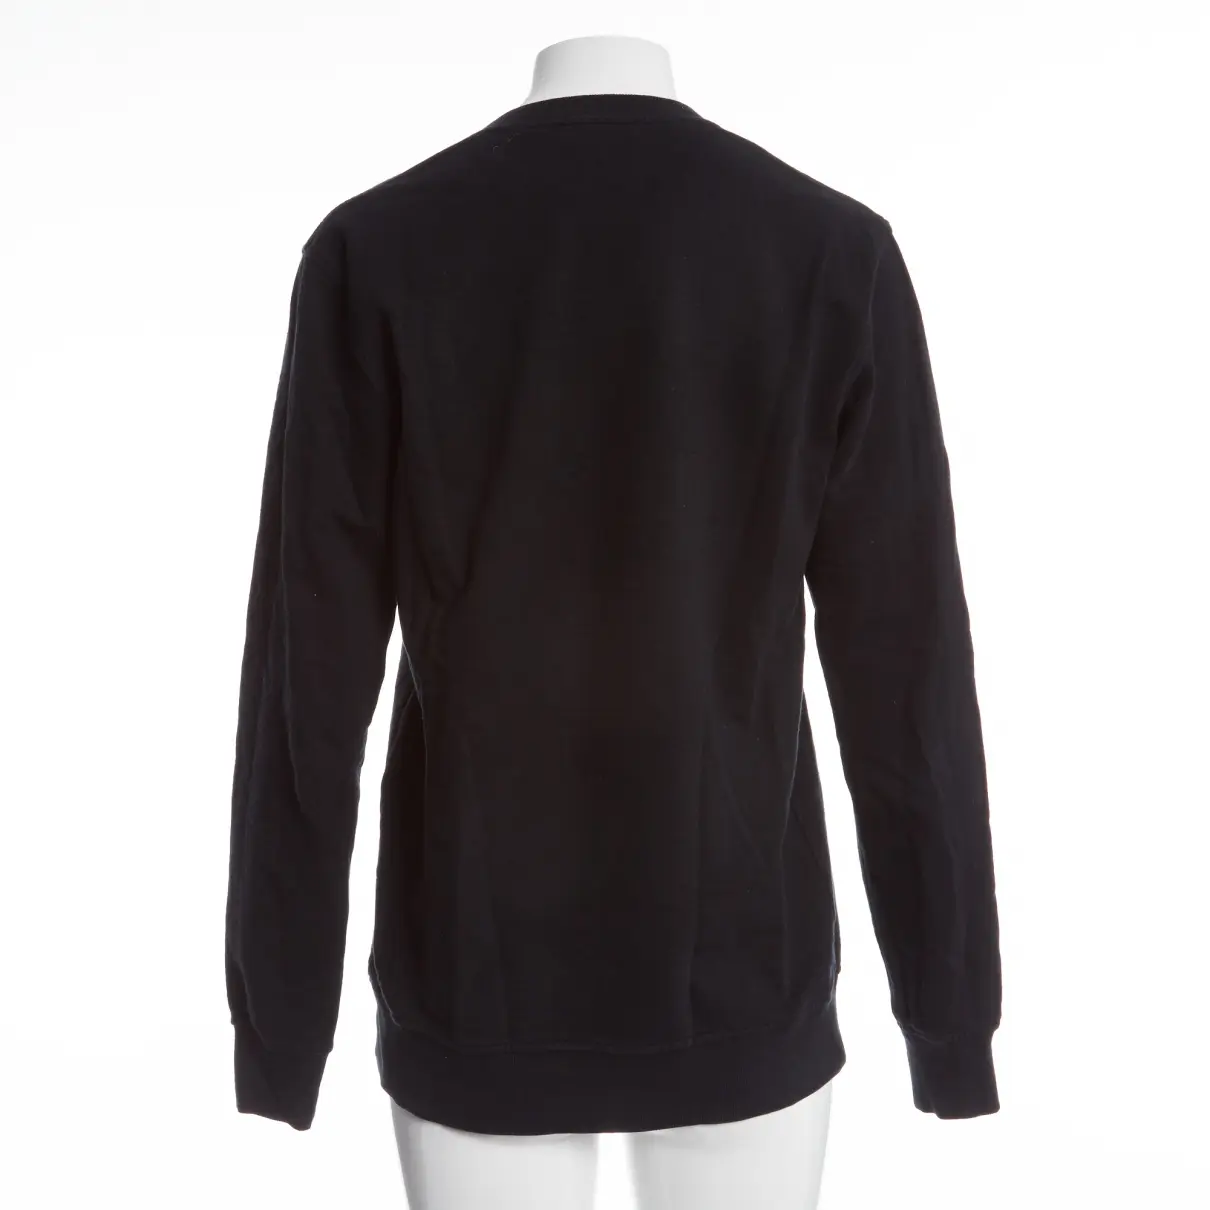 Buy Kris Van Assche Black Cotton Knitwear & Sweatshirt online